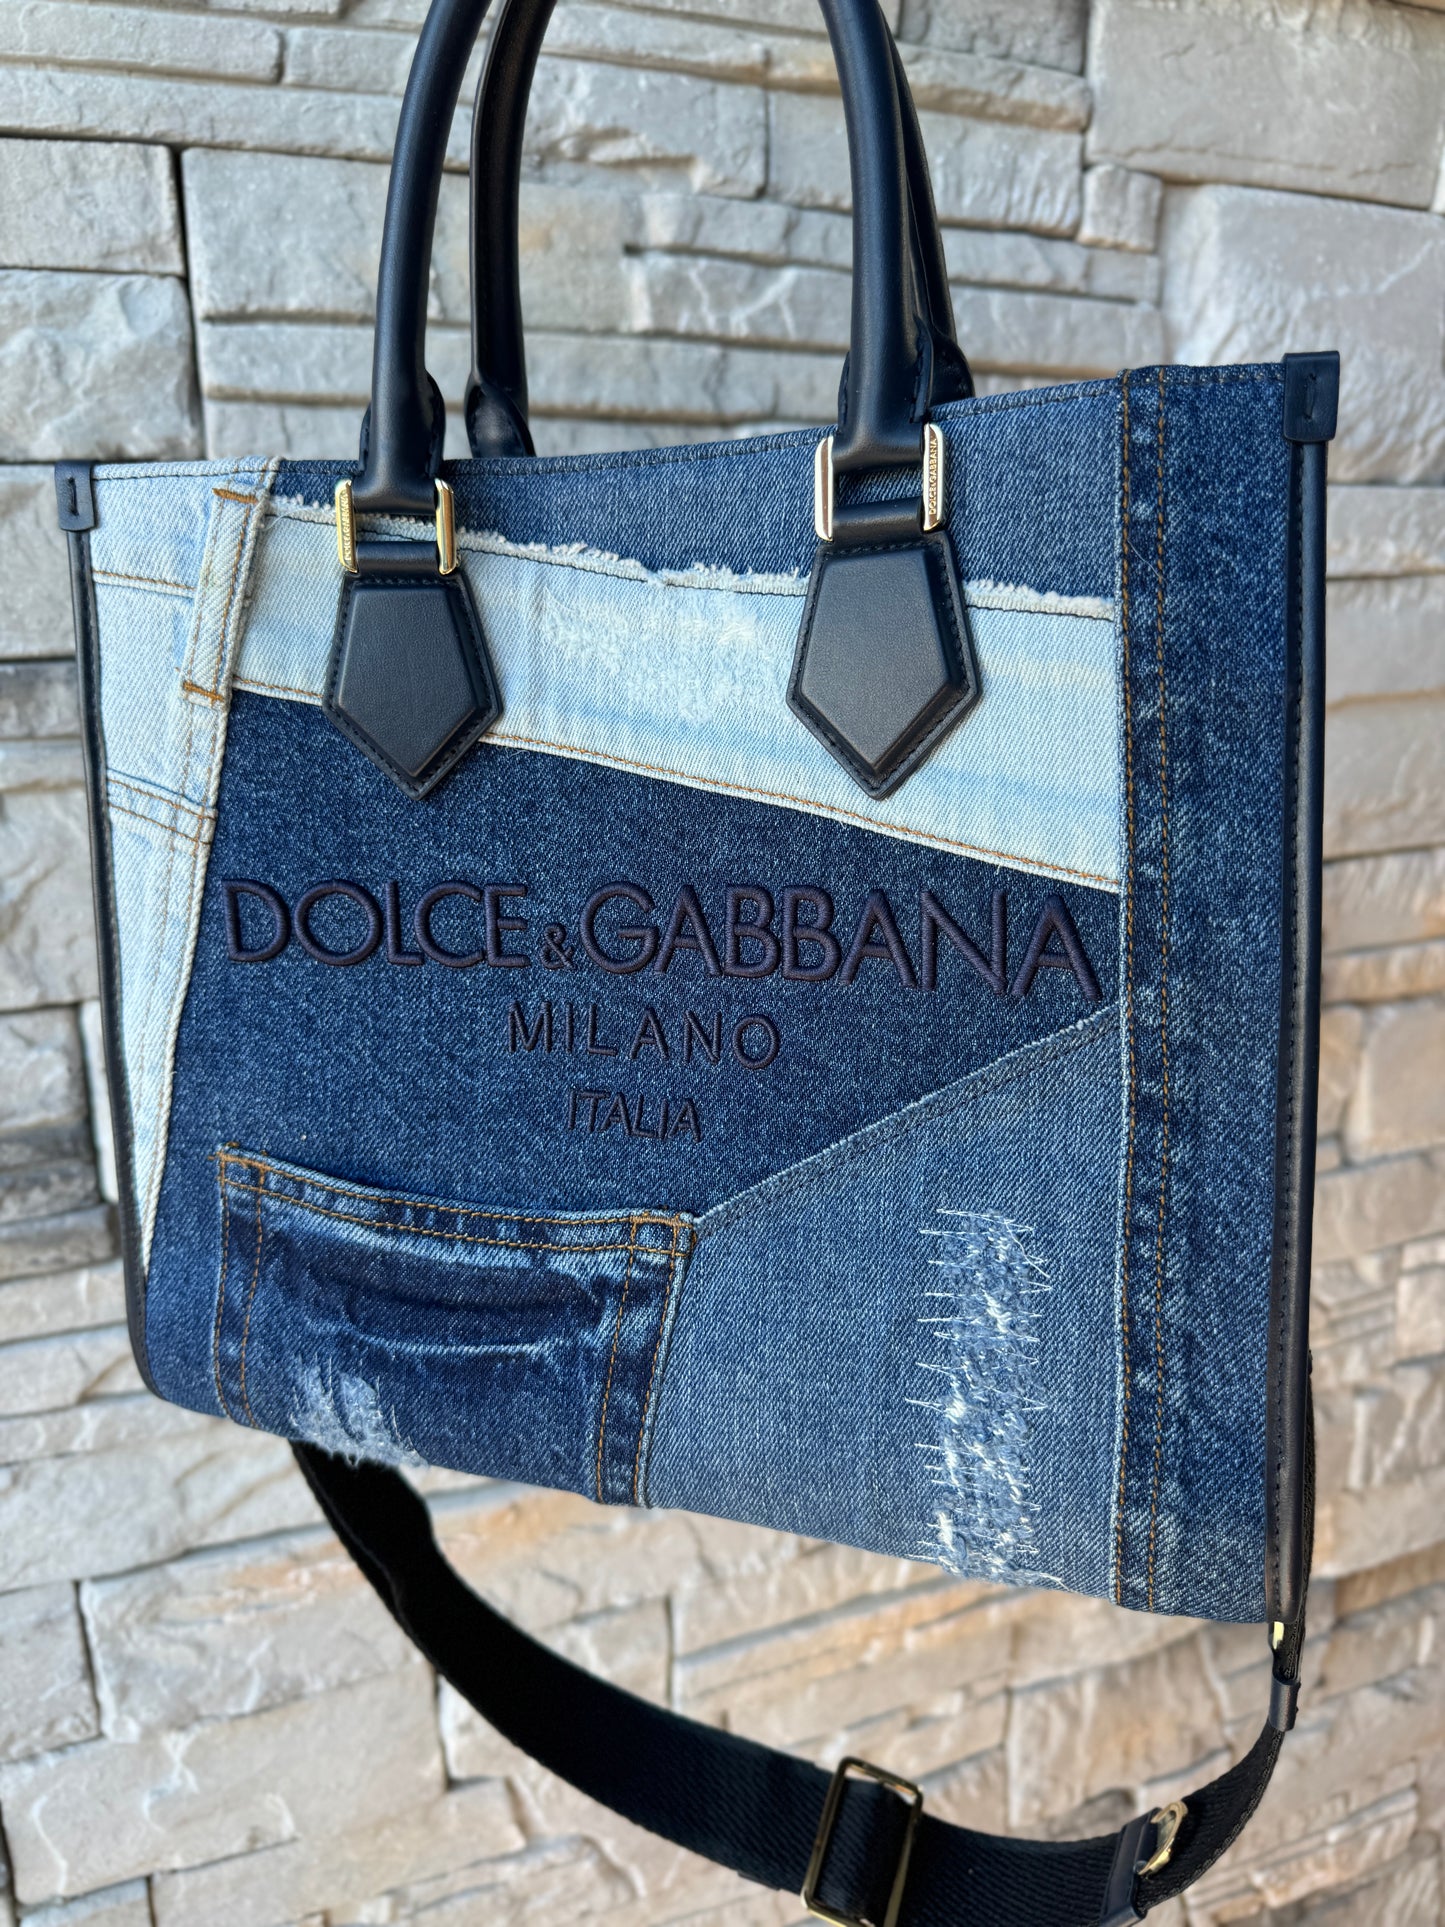 Dolce & Gabbana Patchwork Denim Shopper Tote